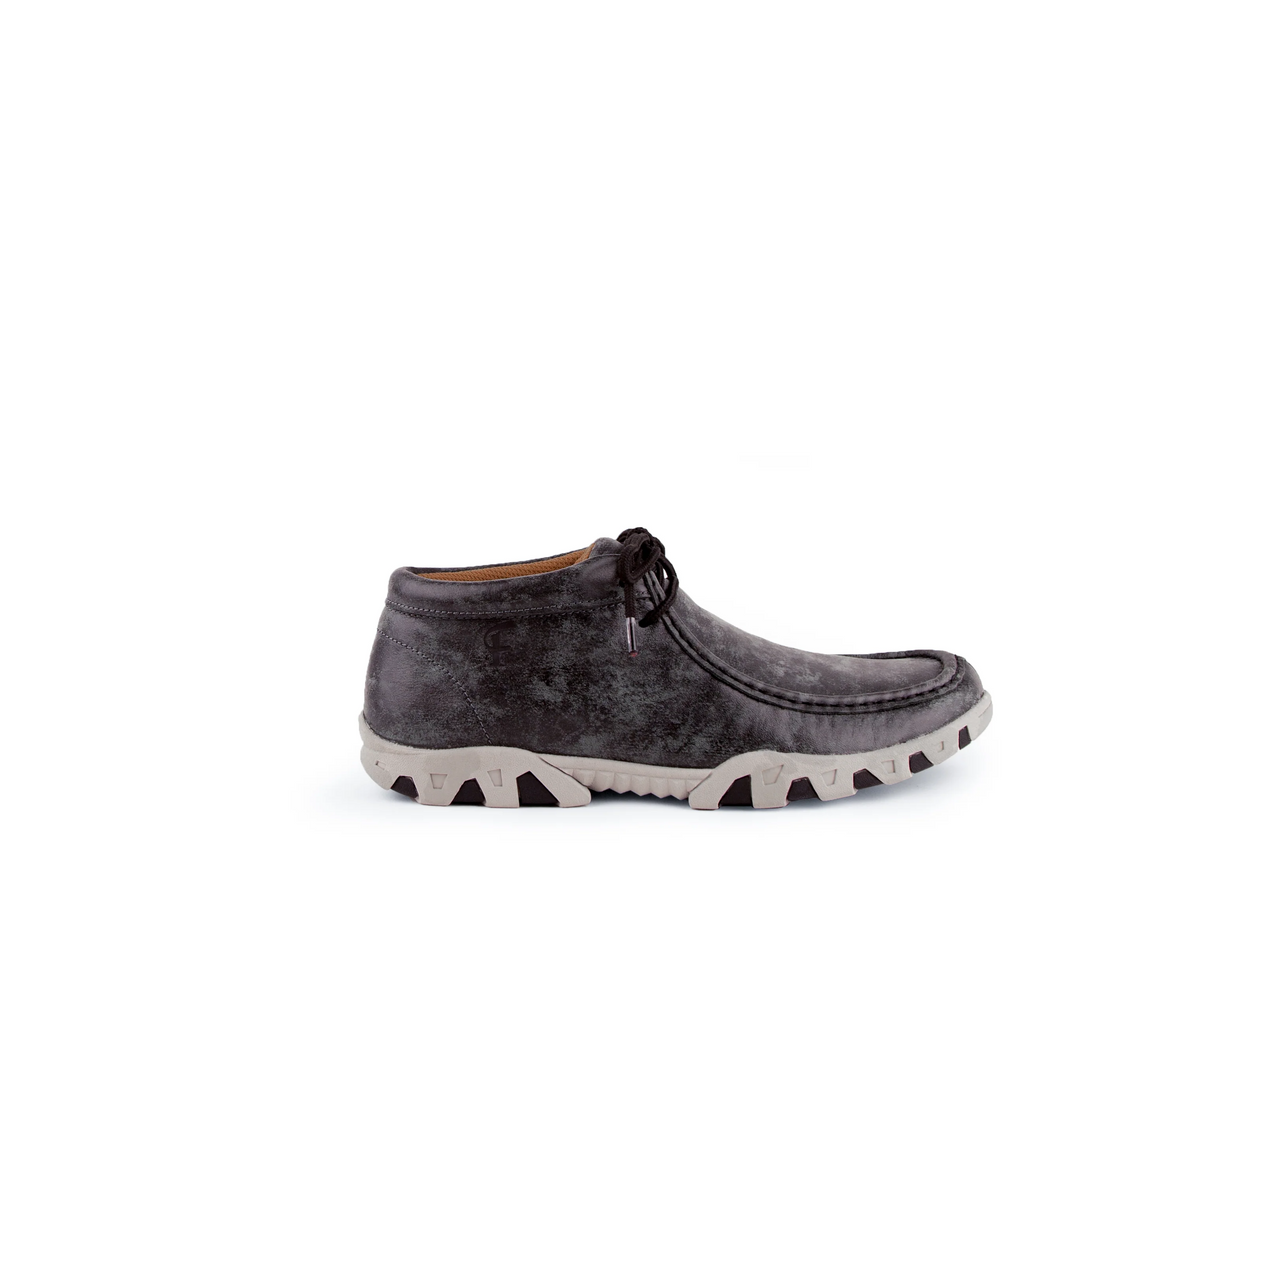 Ferrini Mens Rogue Casual Shoes - Smokey Black